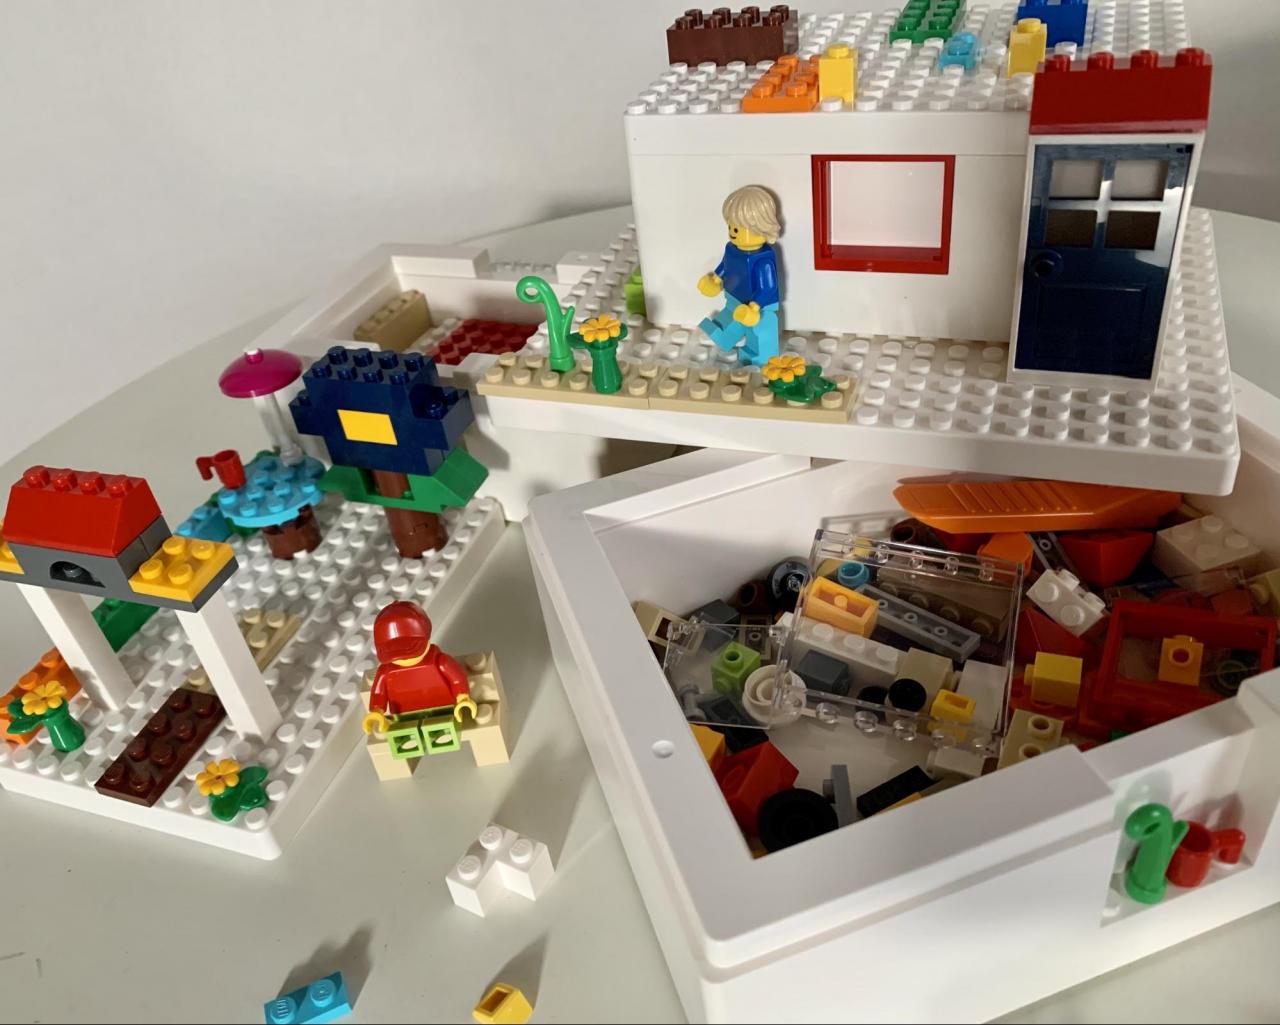 イケア Lego レゴブロックで楽しく収納 話題 ビッグレク は遊び方無限大 1 2 ハピママ